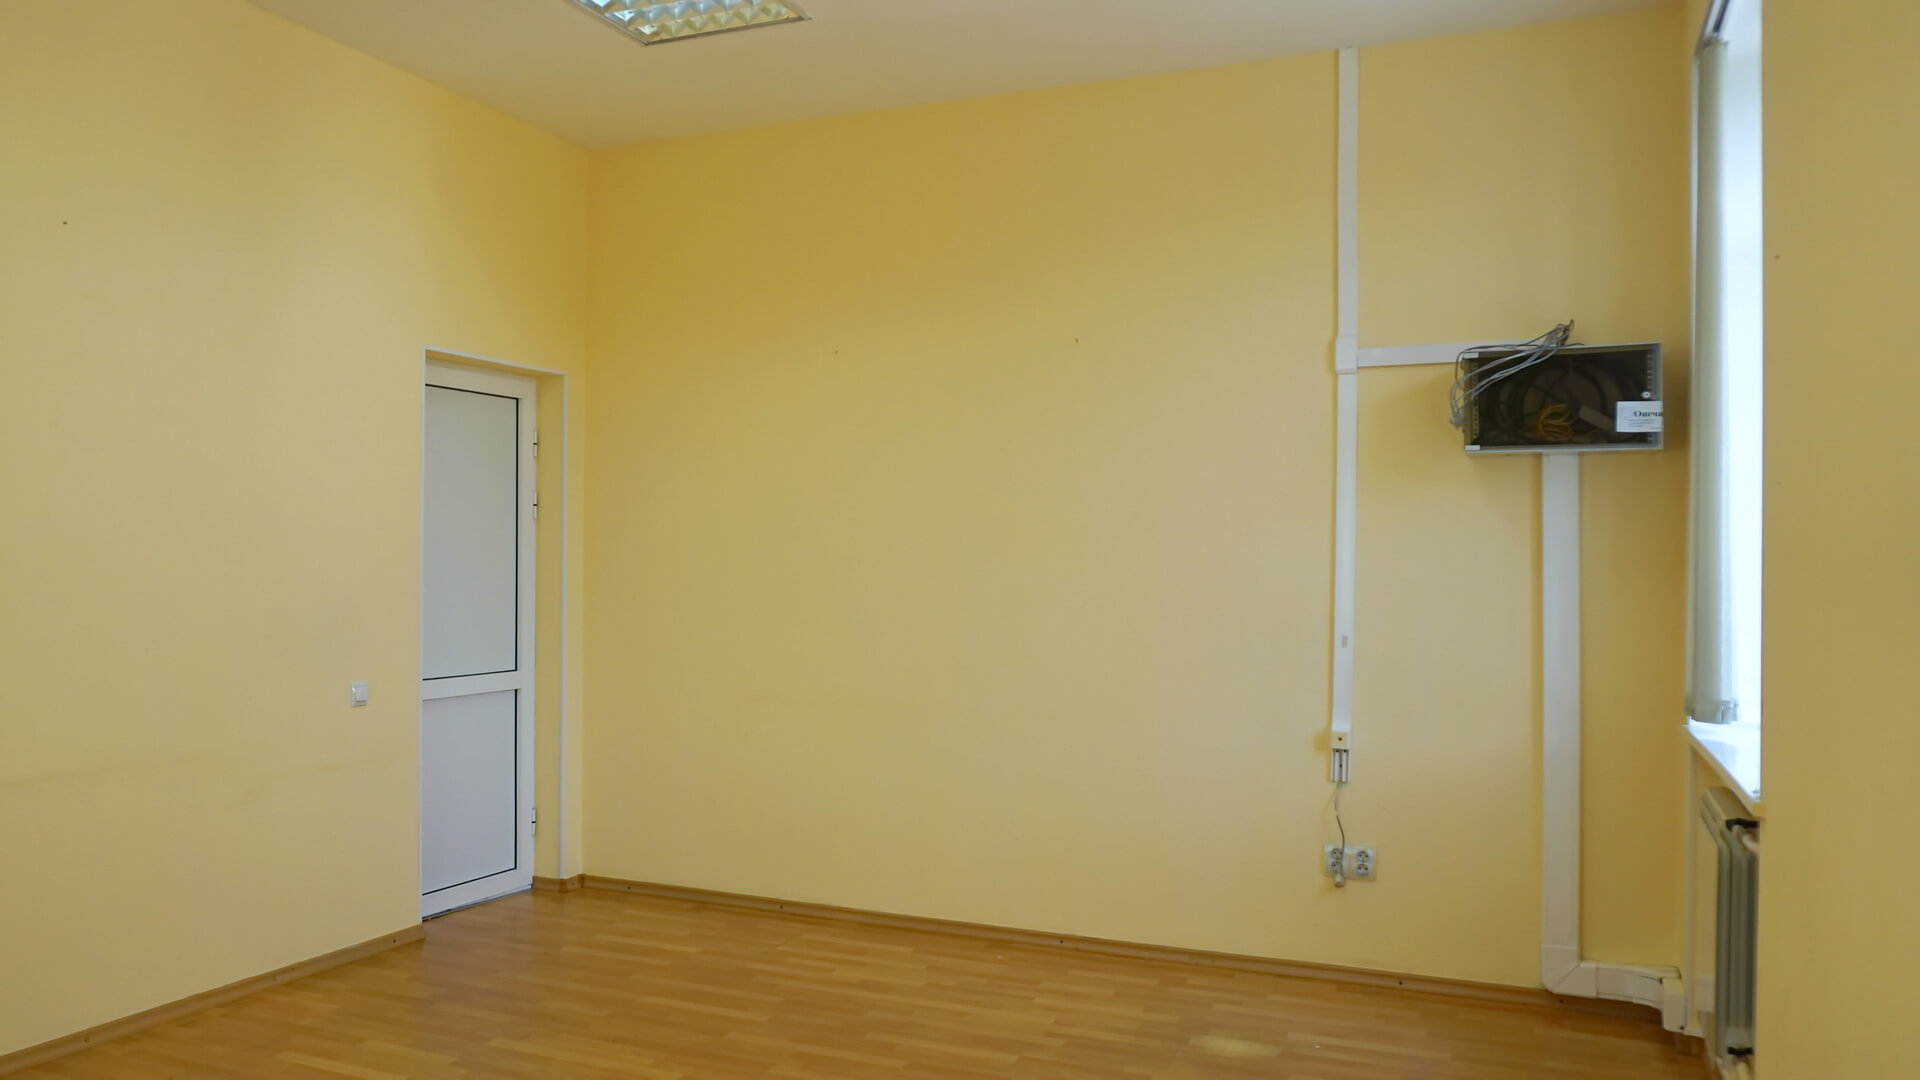 Офис в Ангарске с ремонтом, предоставлением юридического адреса, парковкой для легкового транспорта на территории